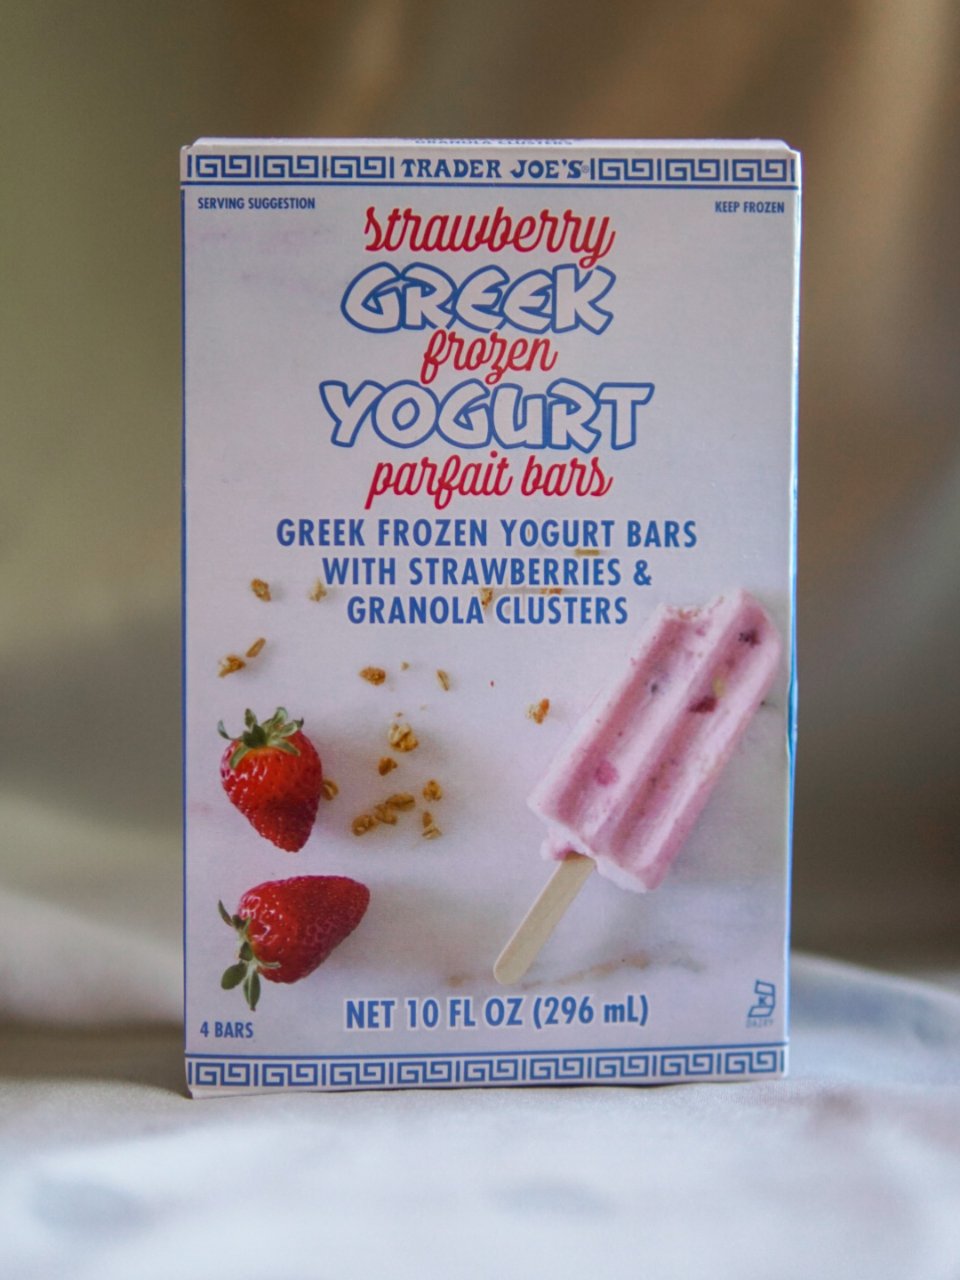 缺德舅| 这款草莓酸奶冰棍也太好吃了叭！...